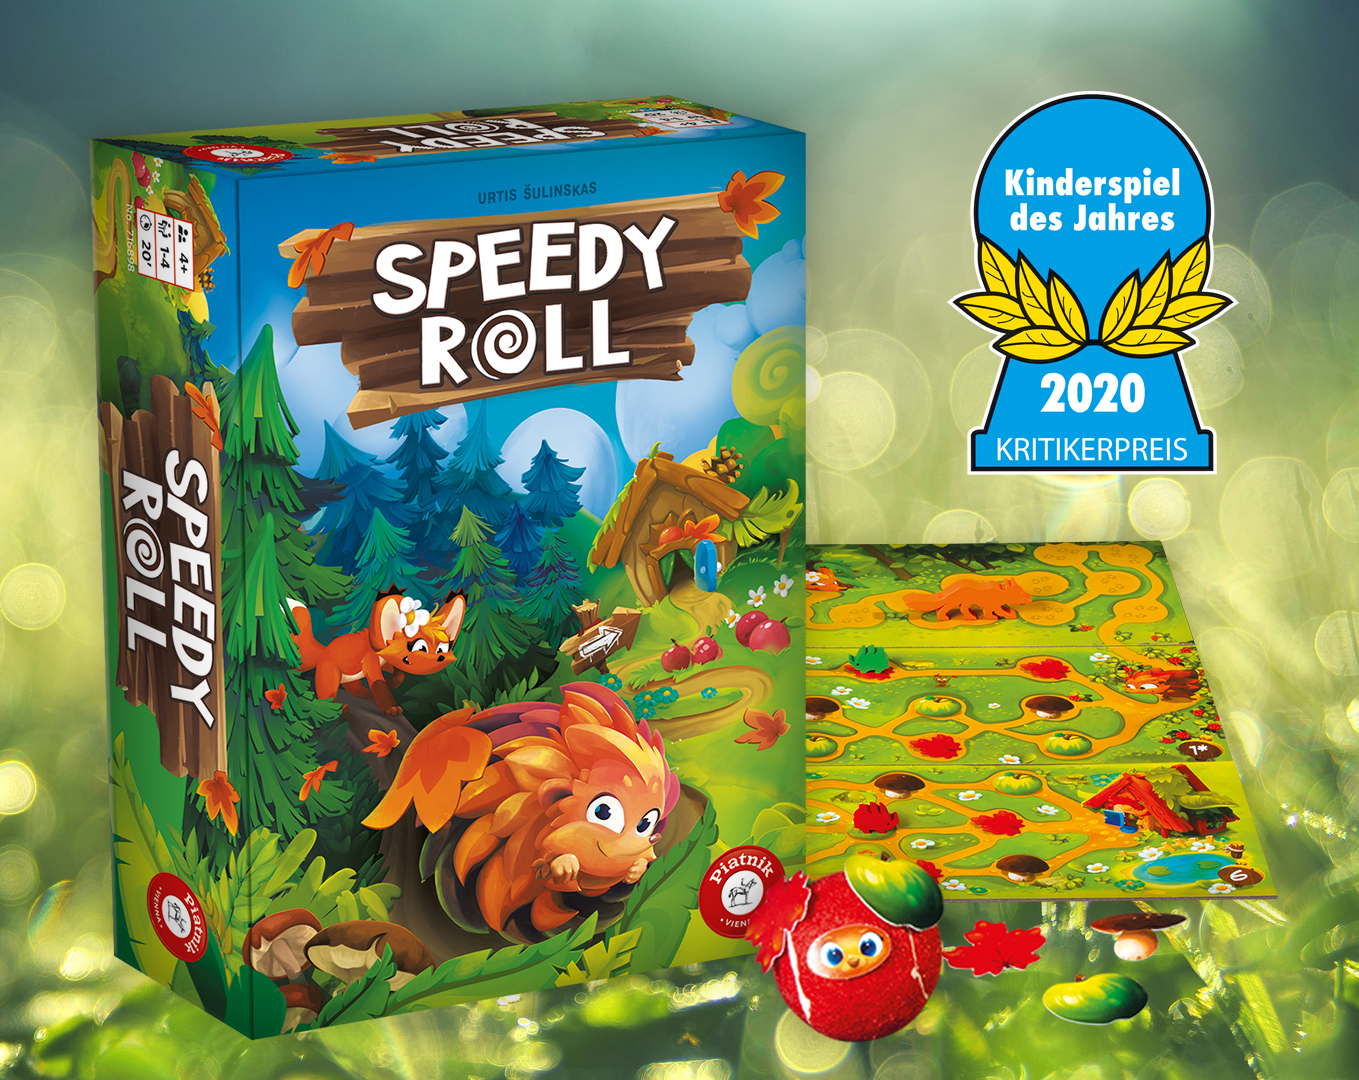 Speedy Roll – Kinderspiel des Jahres 2020